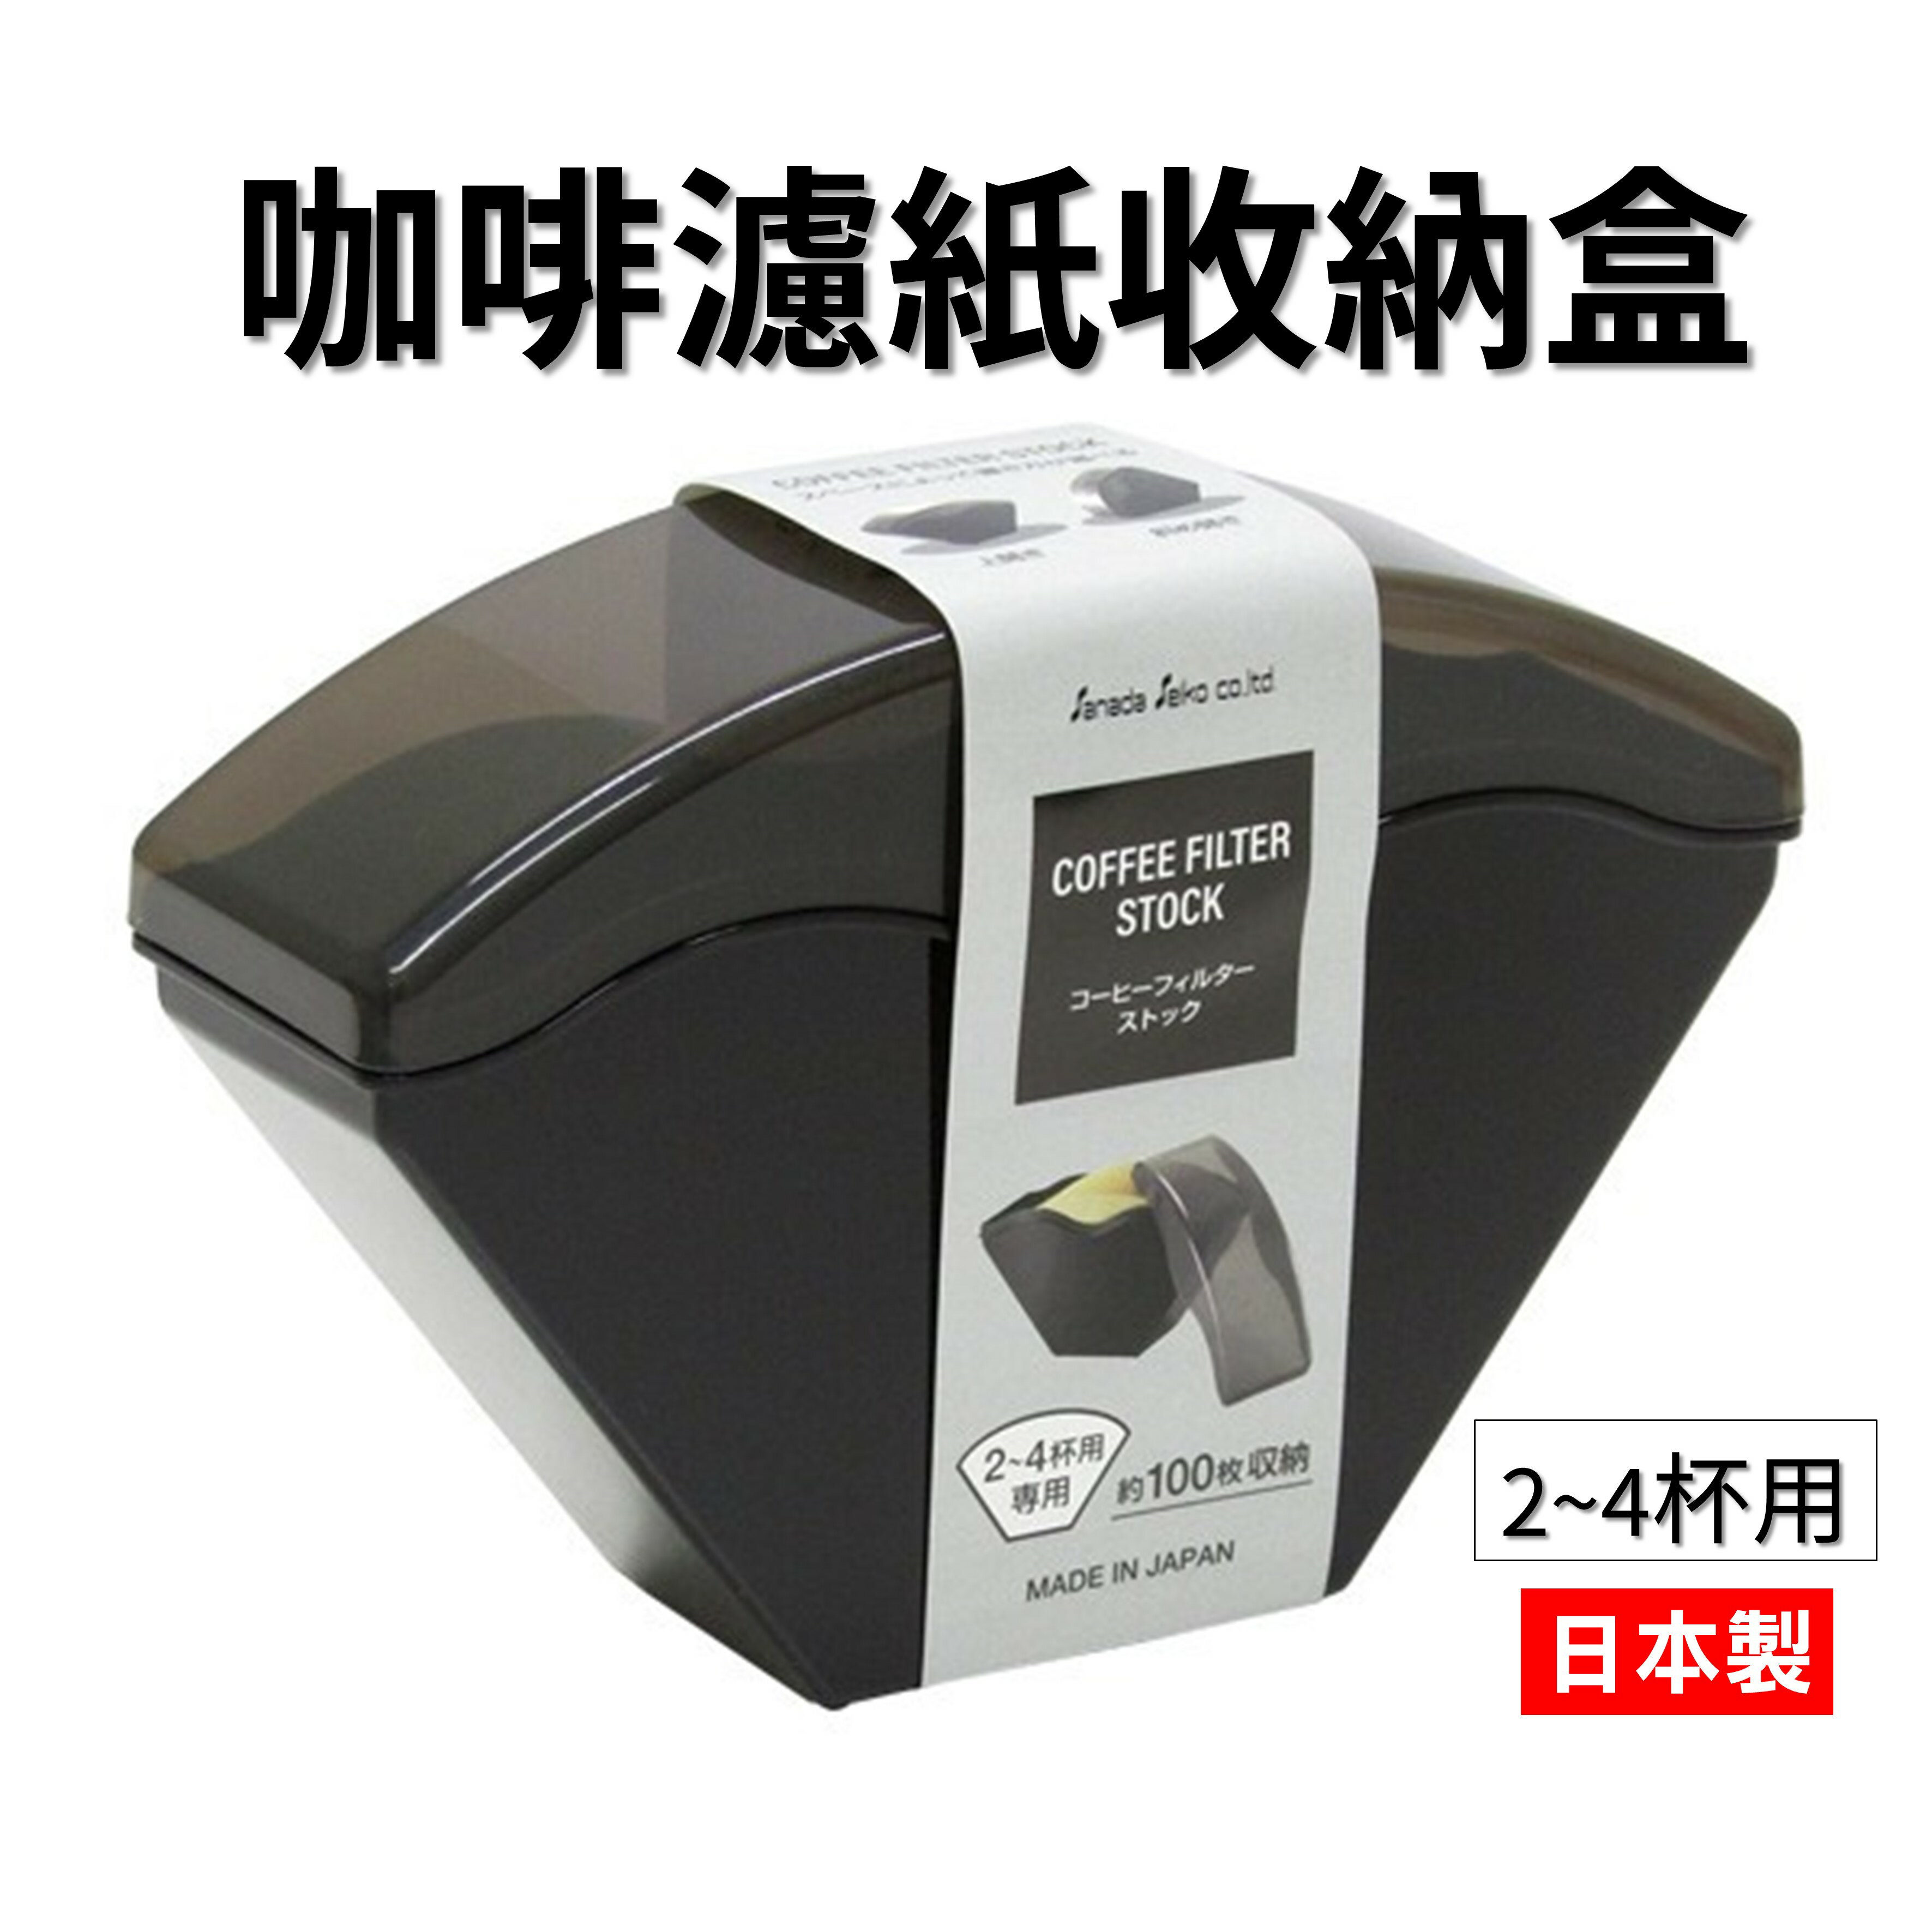 日本 咖啡濾紙收納盒 咖啡濾紙盒 濾紙防塵盒 存放盒 2~4杯專用